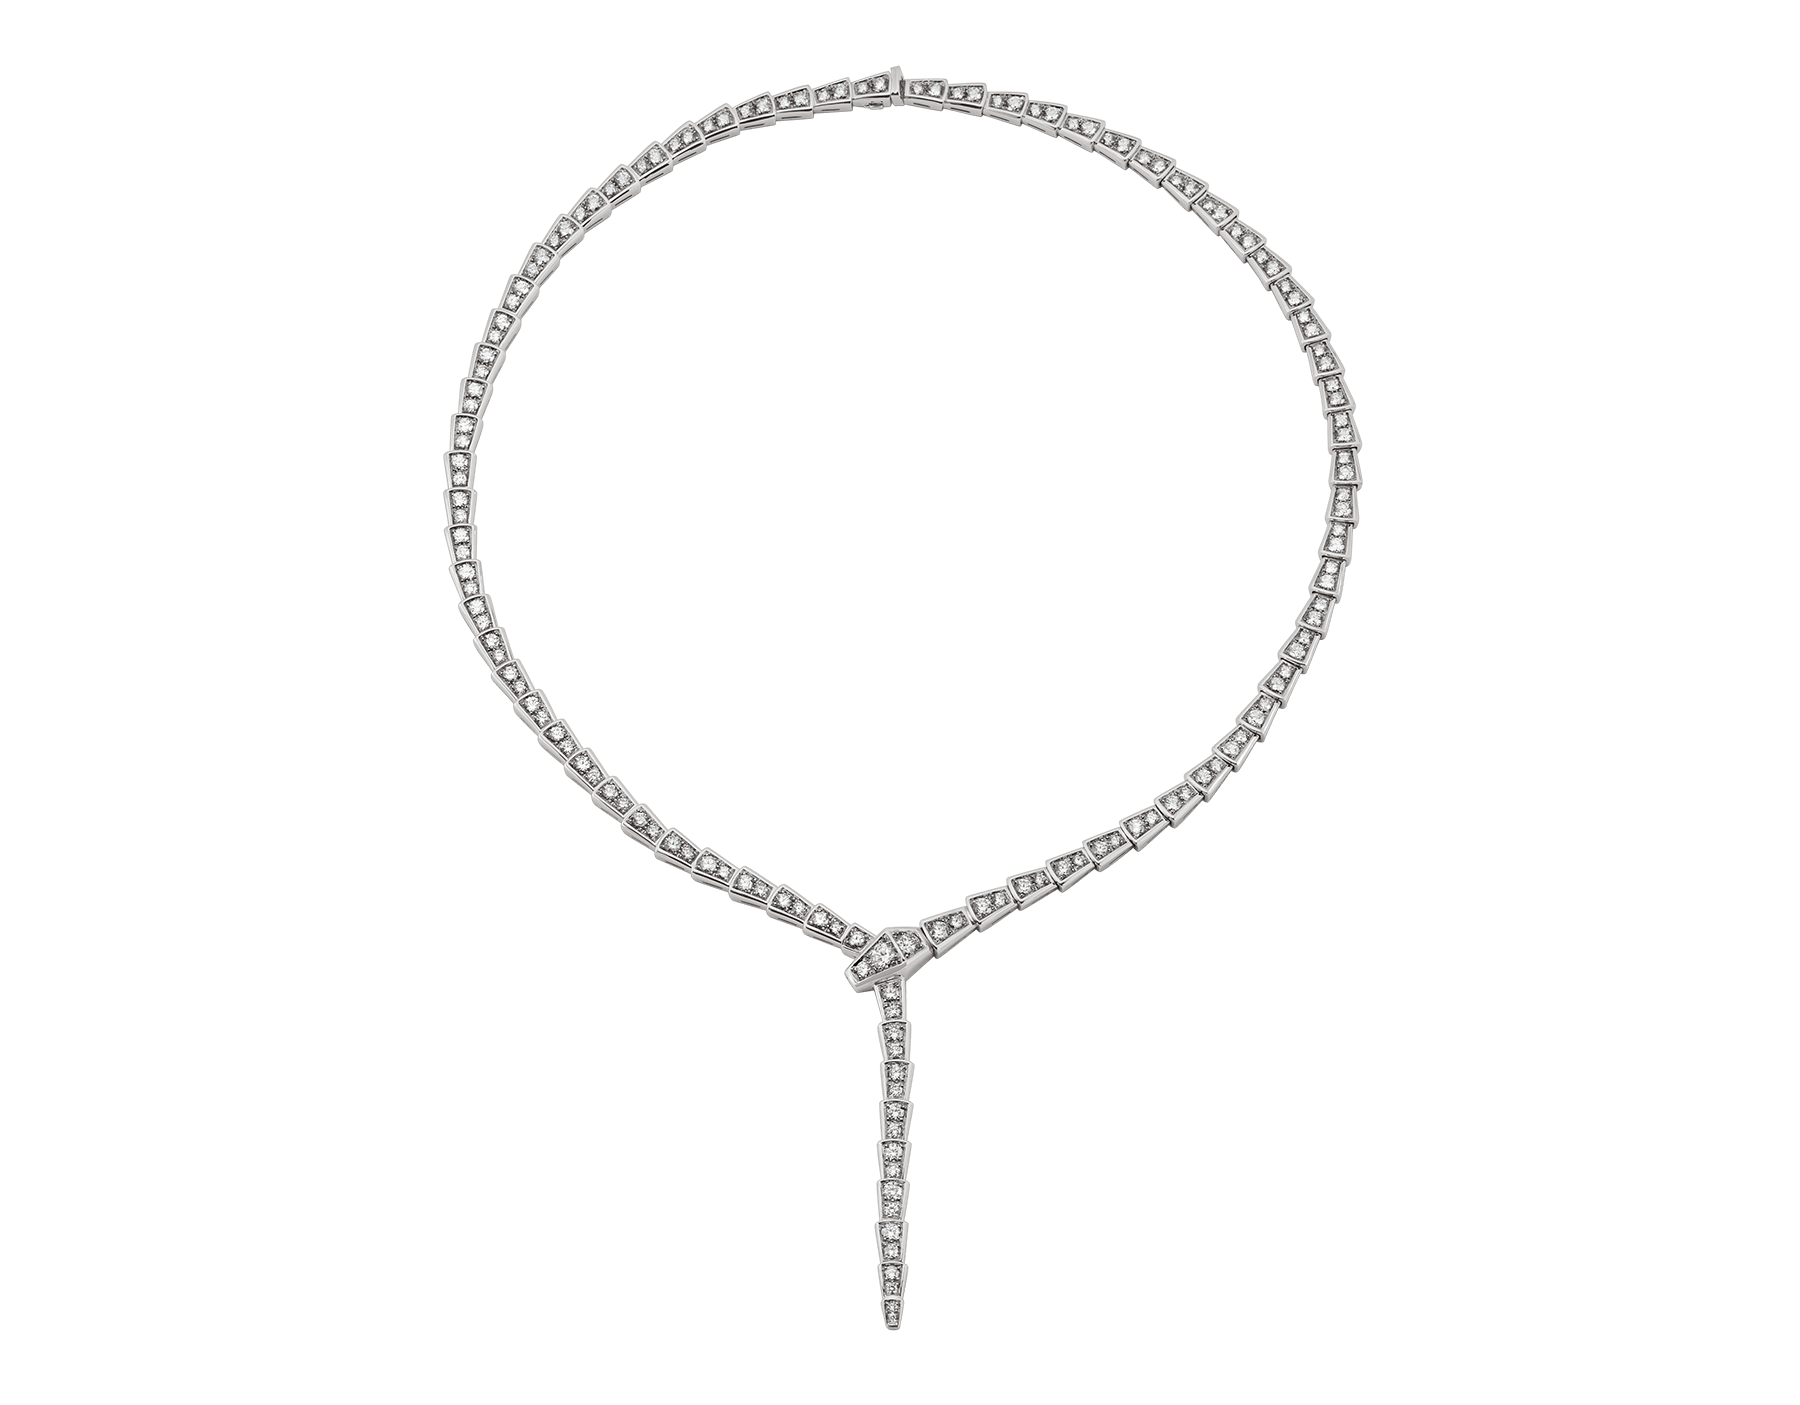 ヘビのようにしなやかで官能的に輝くセルペンティ ヴァイパー ネックレス。繊細で細かなパヴェダイヤモンドのうろこと高貴な尻尾のくねりが、胸元を優美に飾り立てます。 351090 image 1